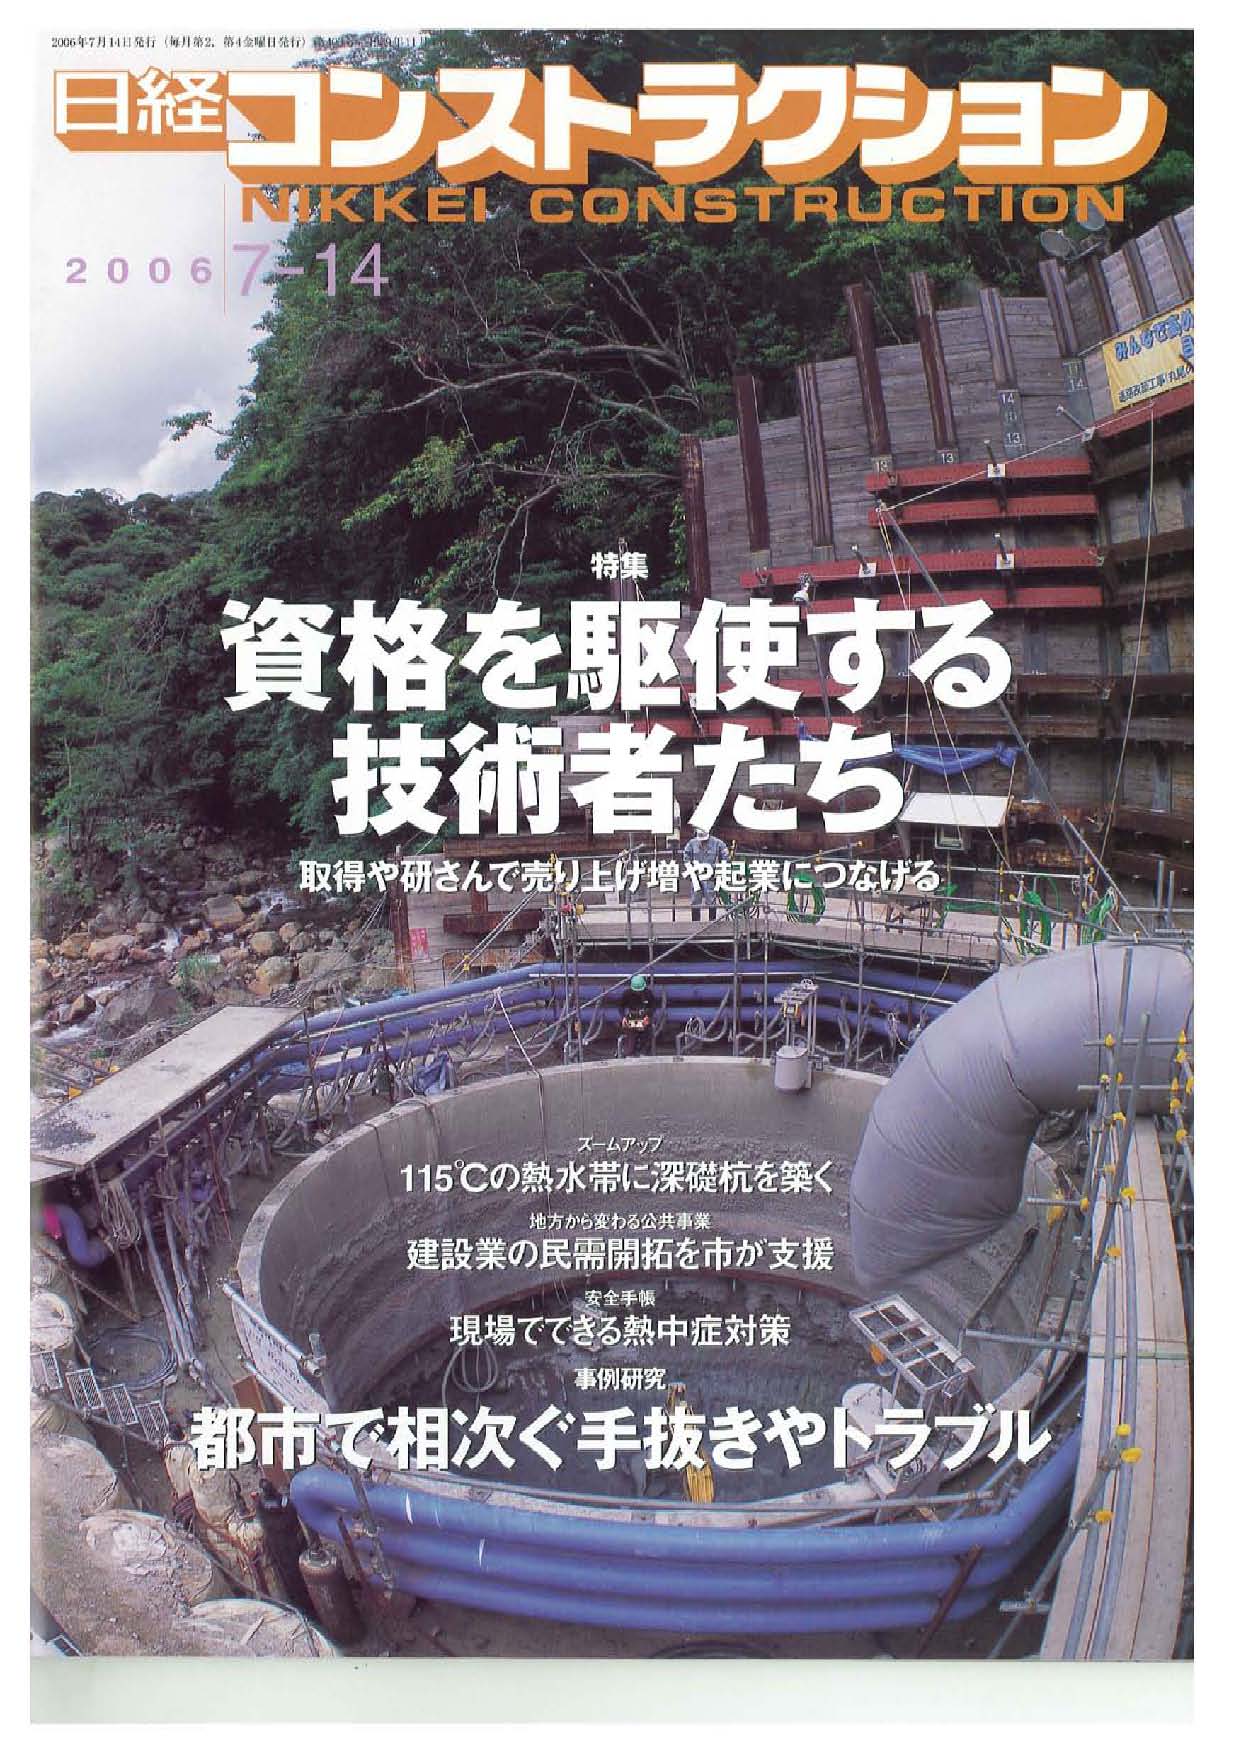 丸尾の滝橋P２橋脚基礎工事が「日経コンストラクション」に掲載されました